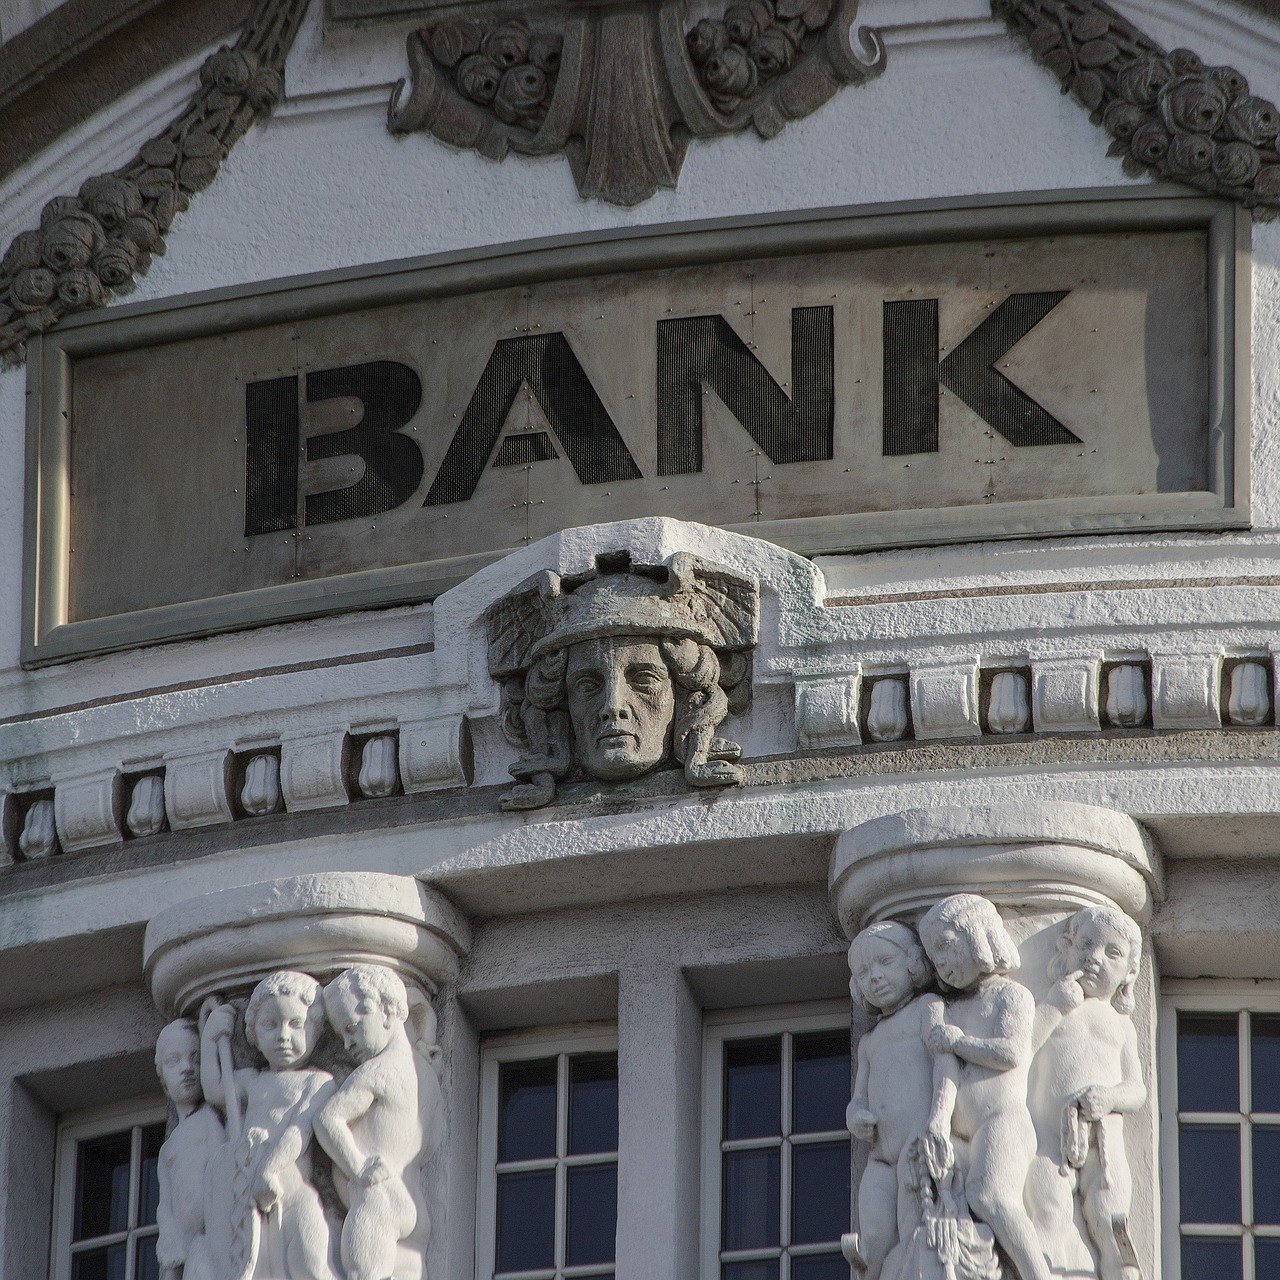 Immobilienkredit abgelehnt – Banker macht Kunden madig